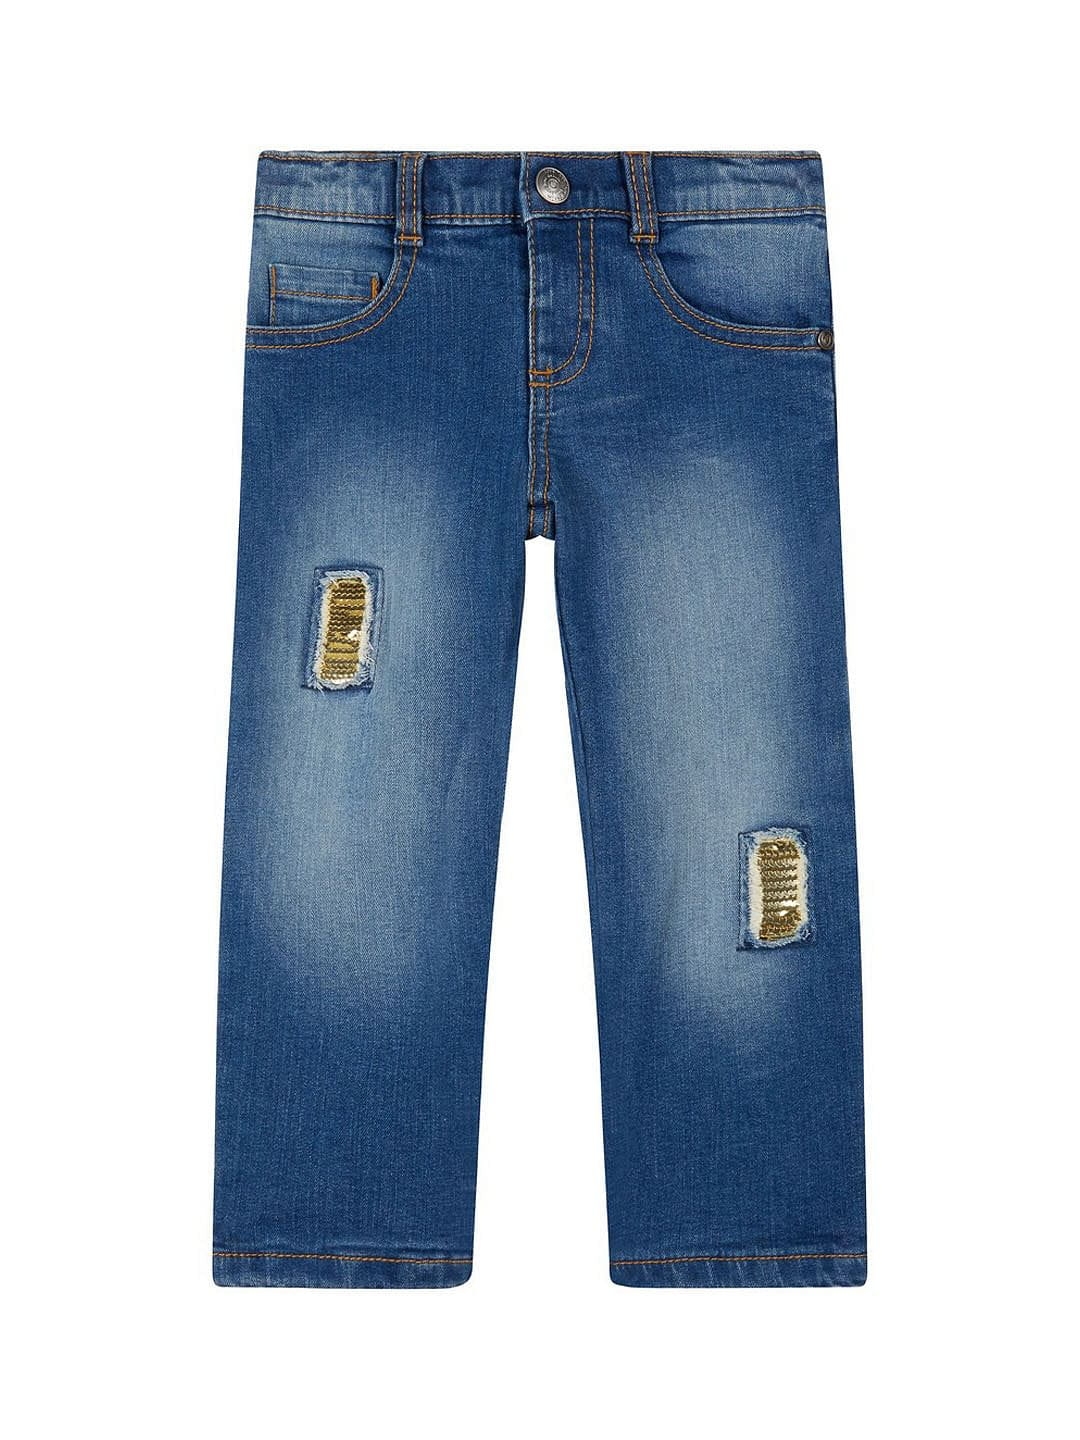 Blue Sequin Patch Jeans